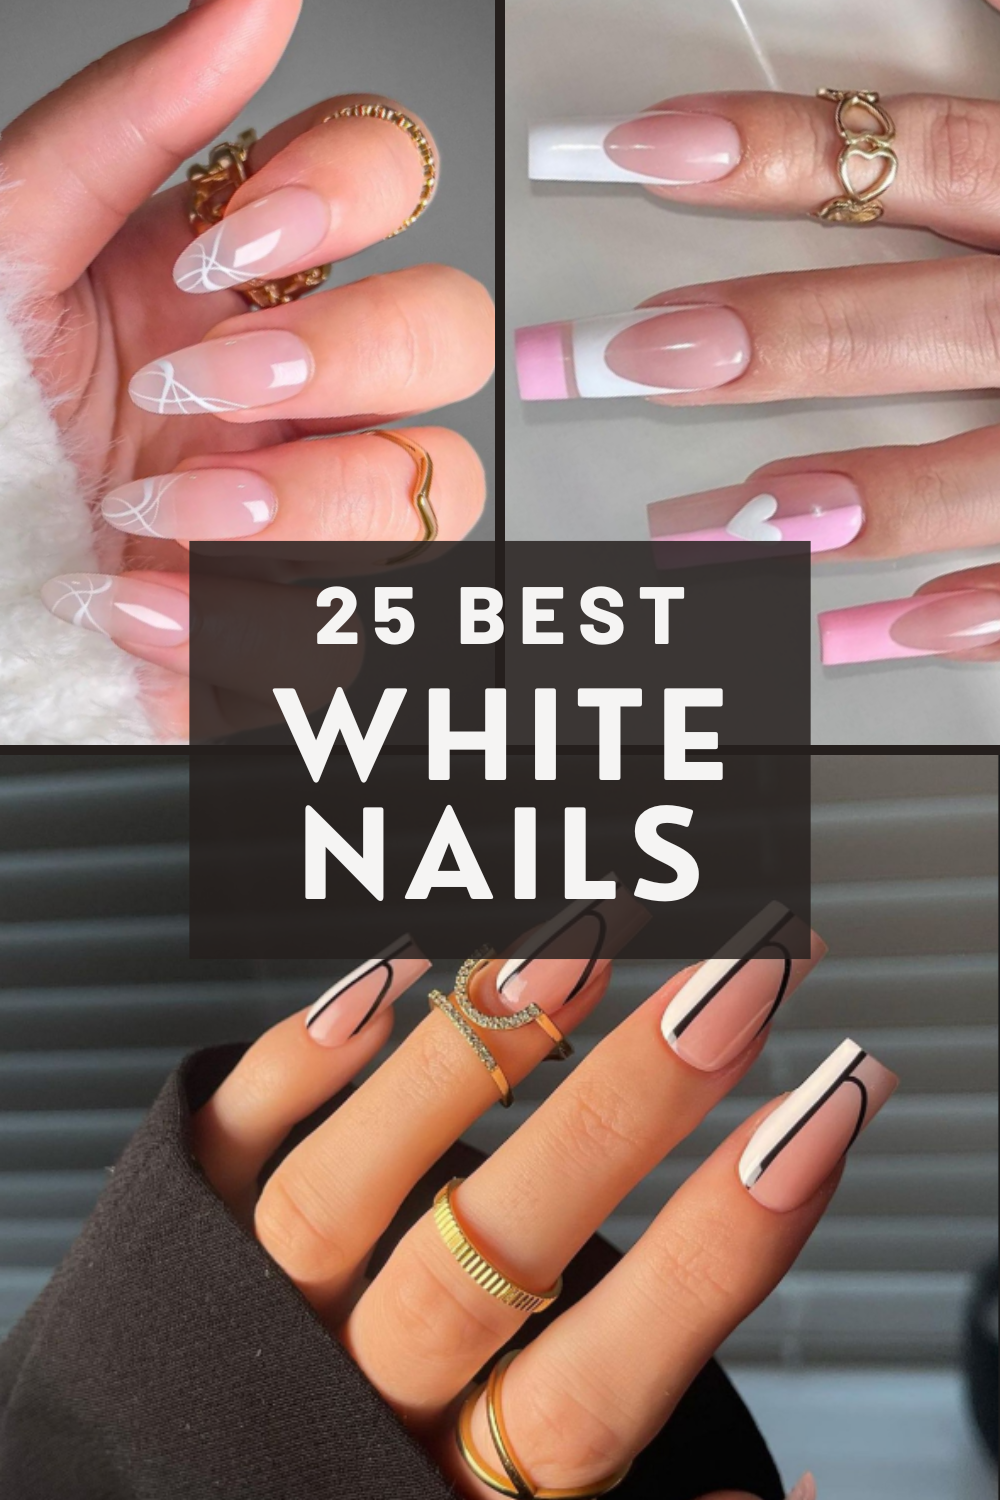 25 Best White Nails